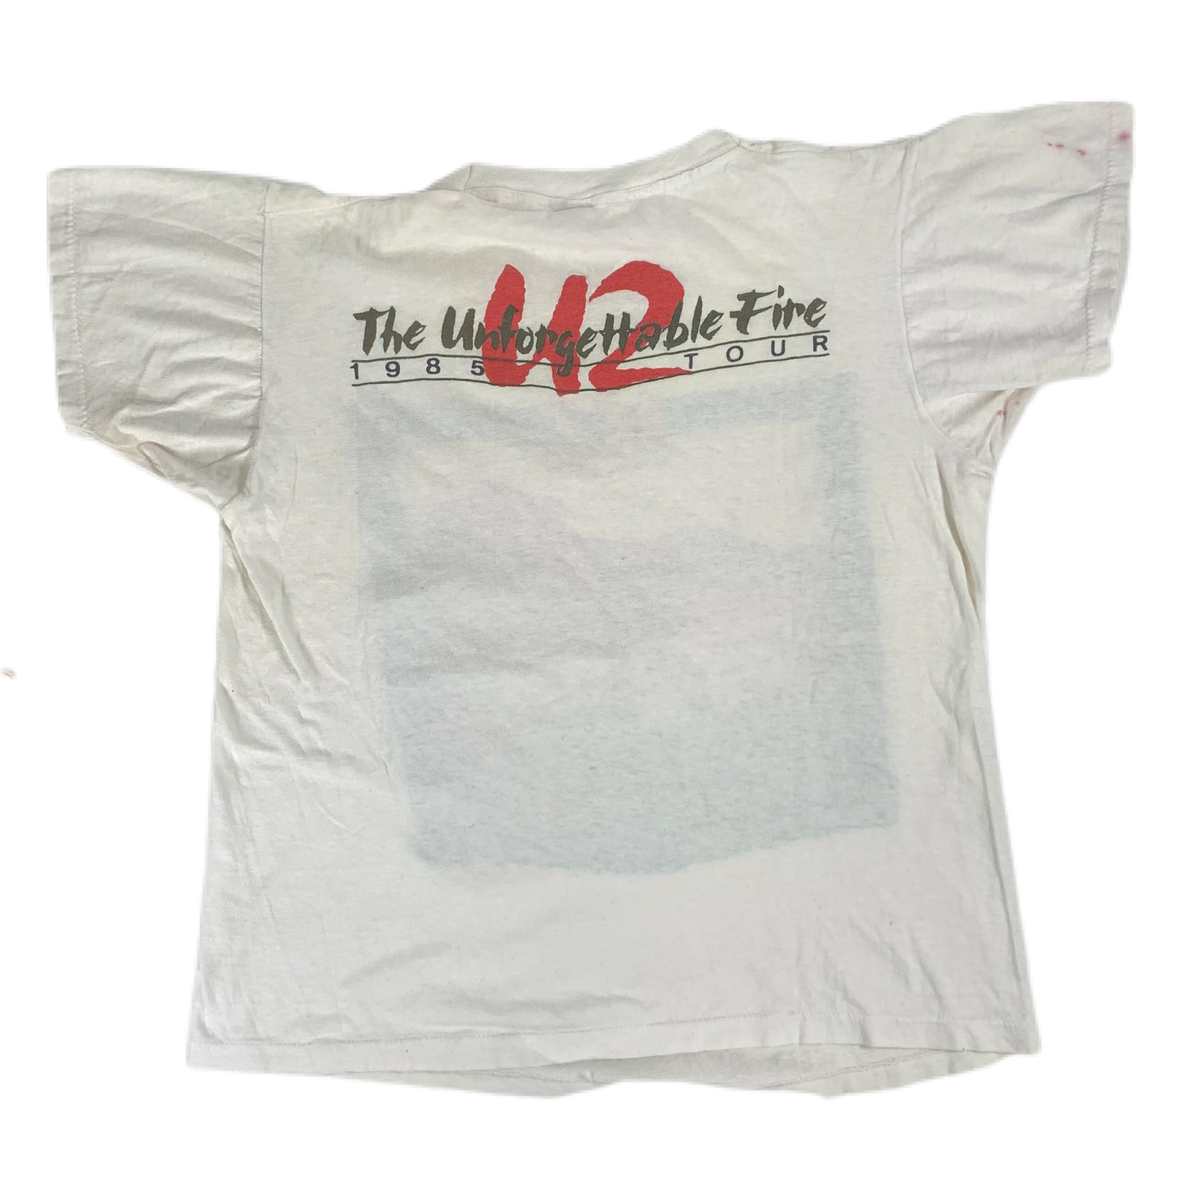 Vintage U2 &quot;The Unforgettable Fire&quot; T-Shirt